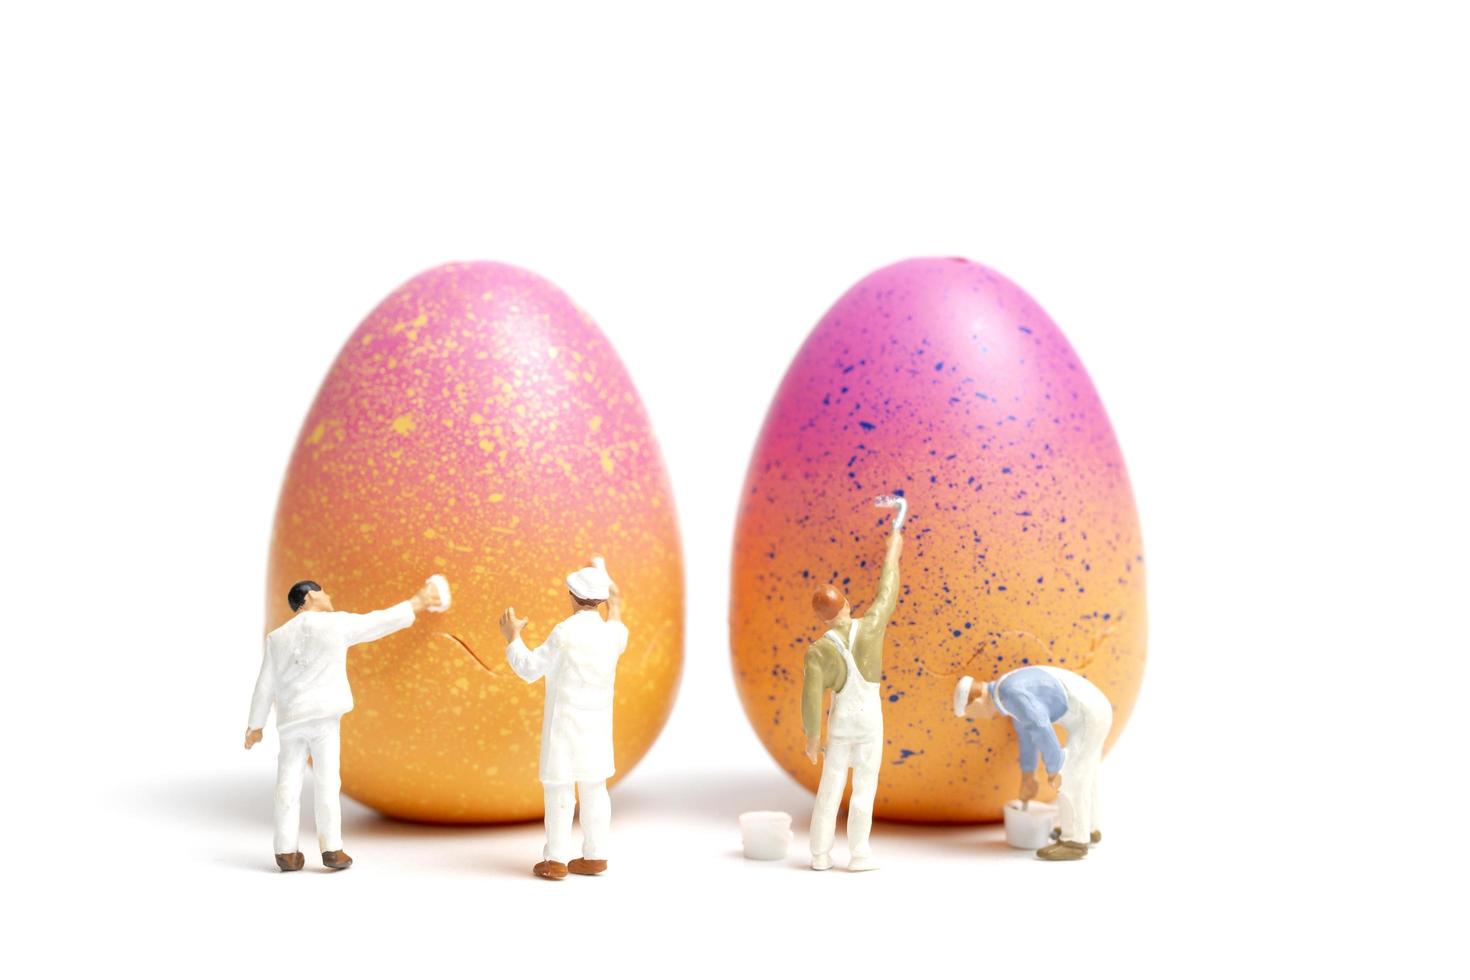 miniatyrfolk som målar påskägg för påskdag på en vit bakgrund foto